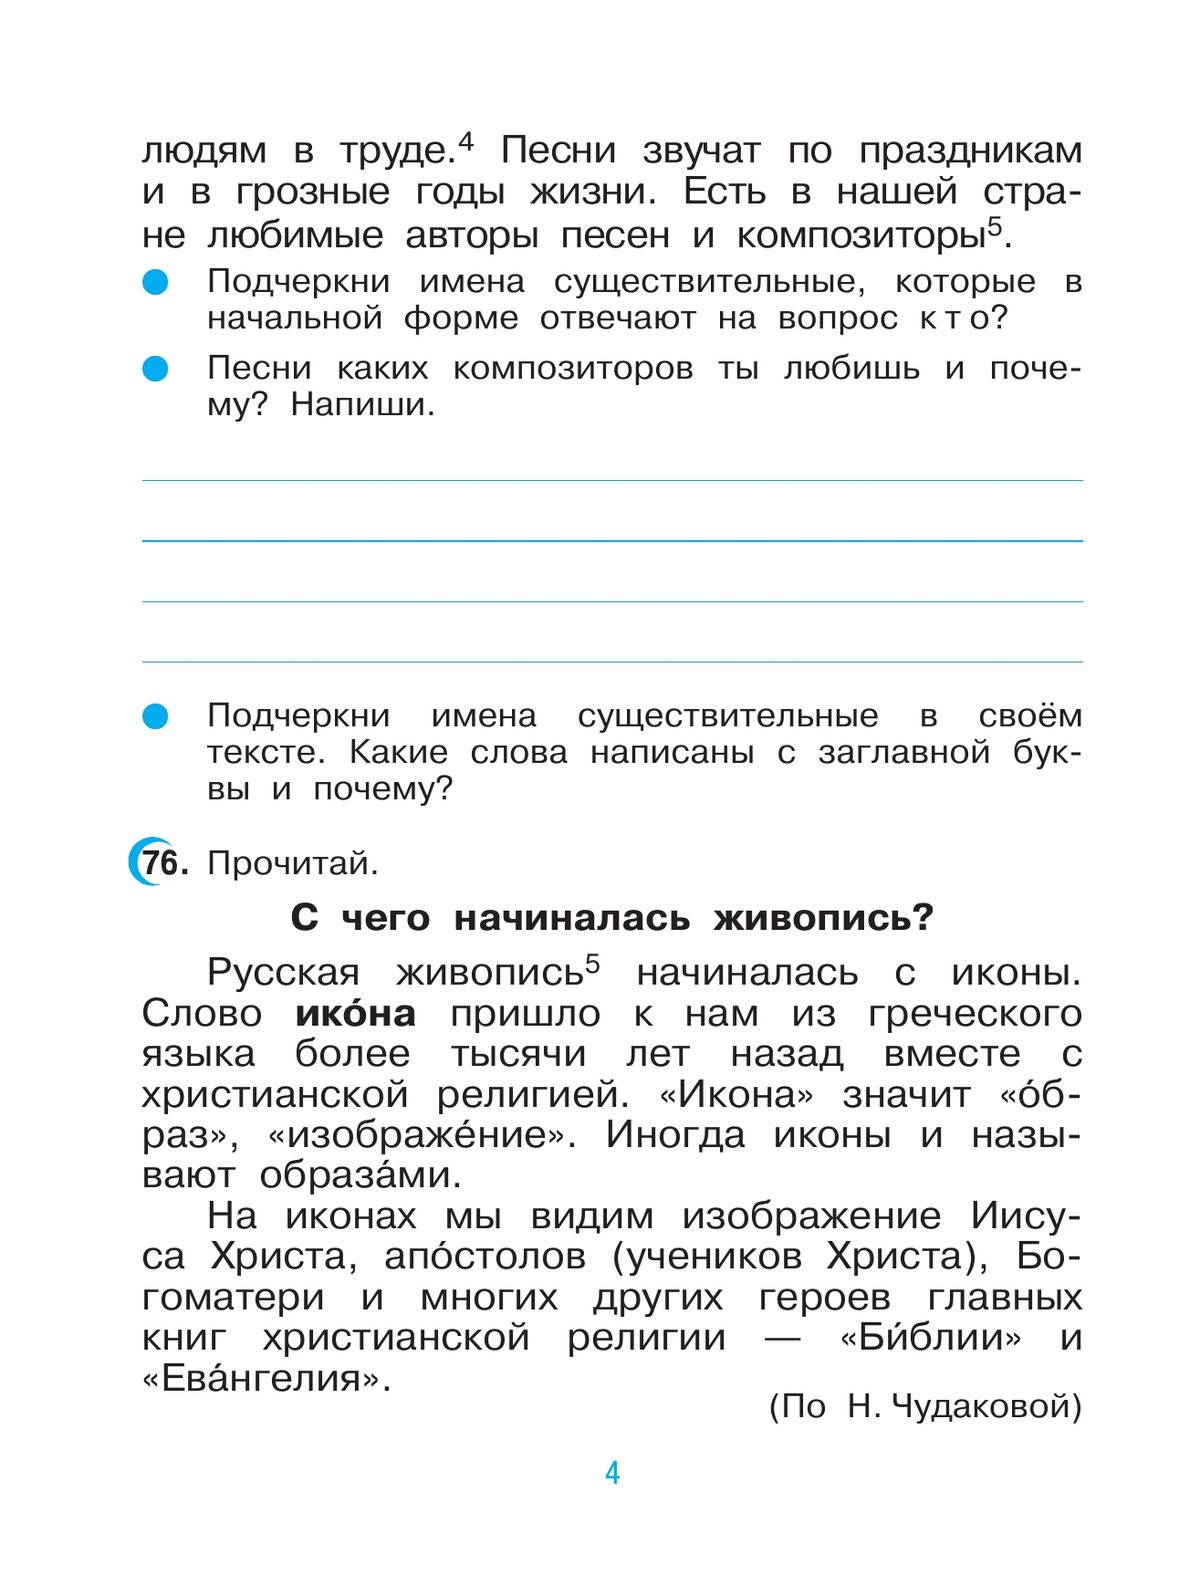 Русский язык. 3 класс. Рабочая тетрадь. В 2 ч. Часть 2 7